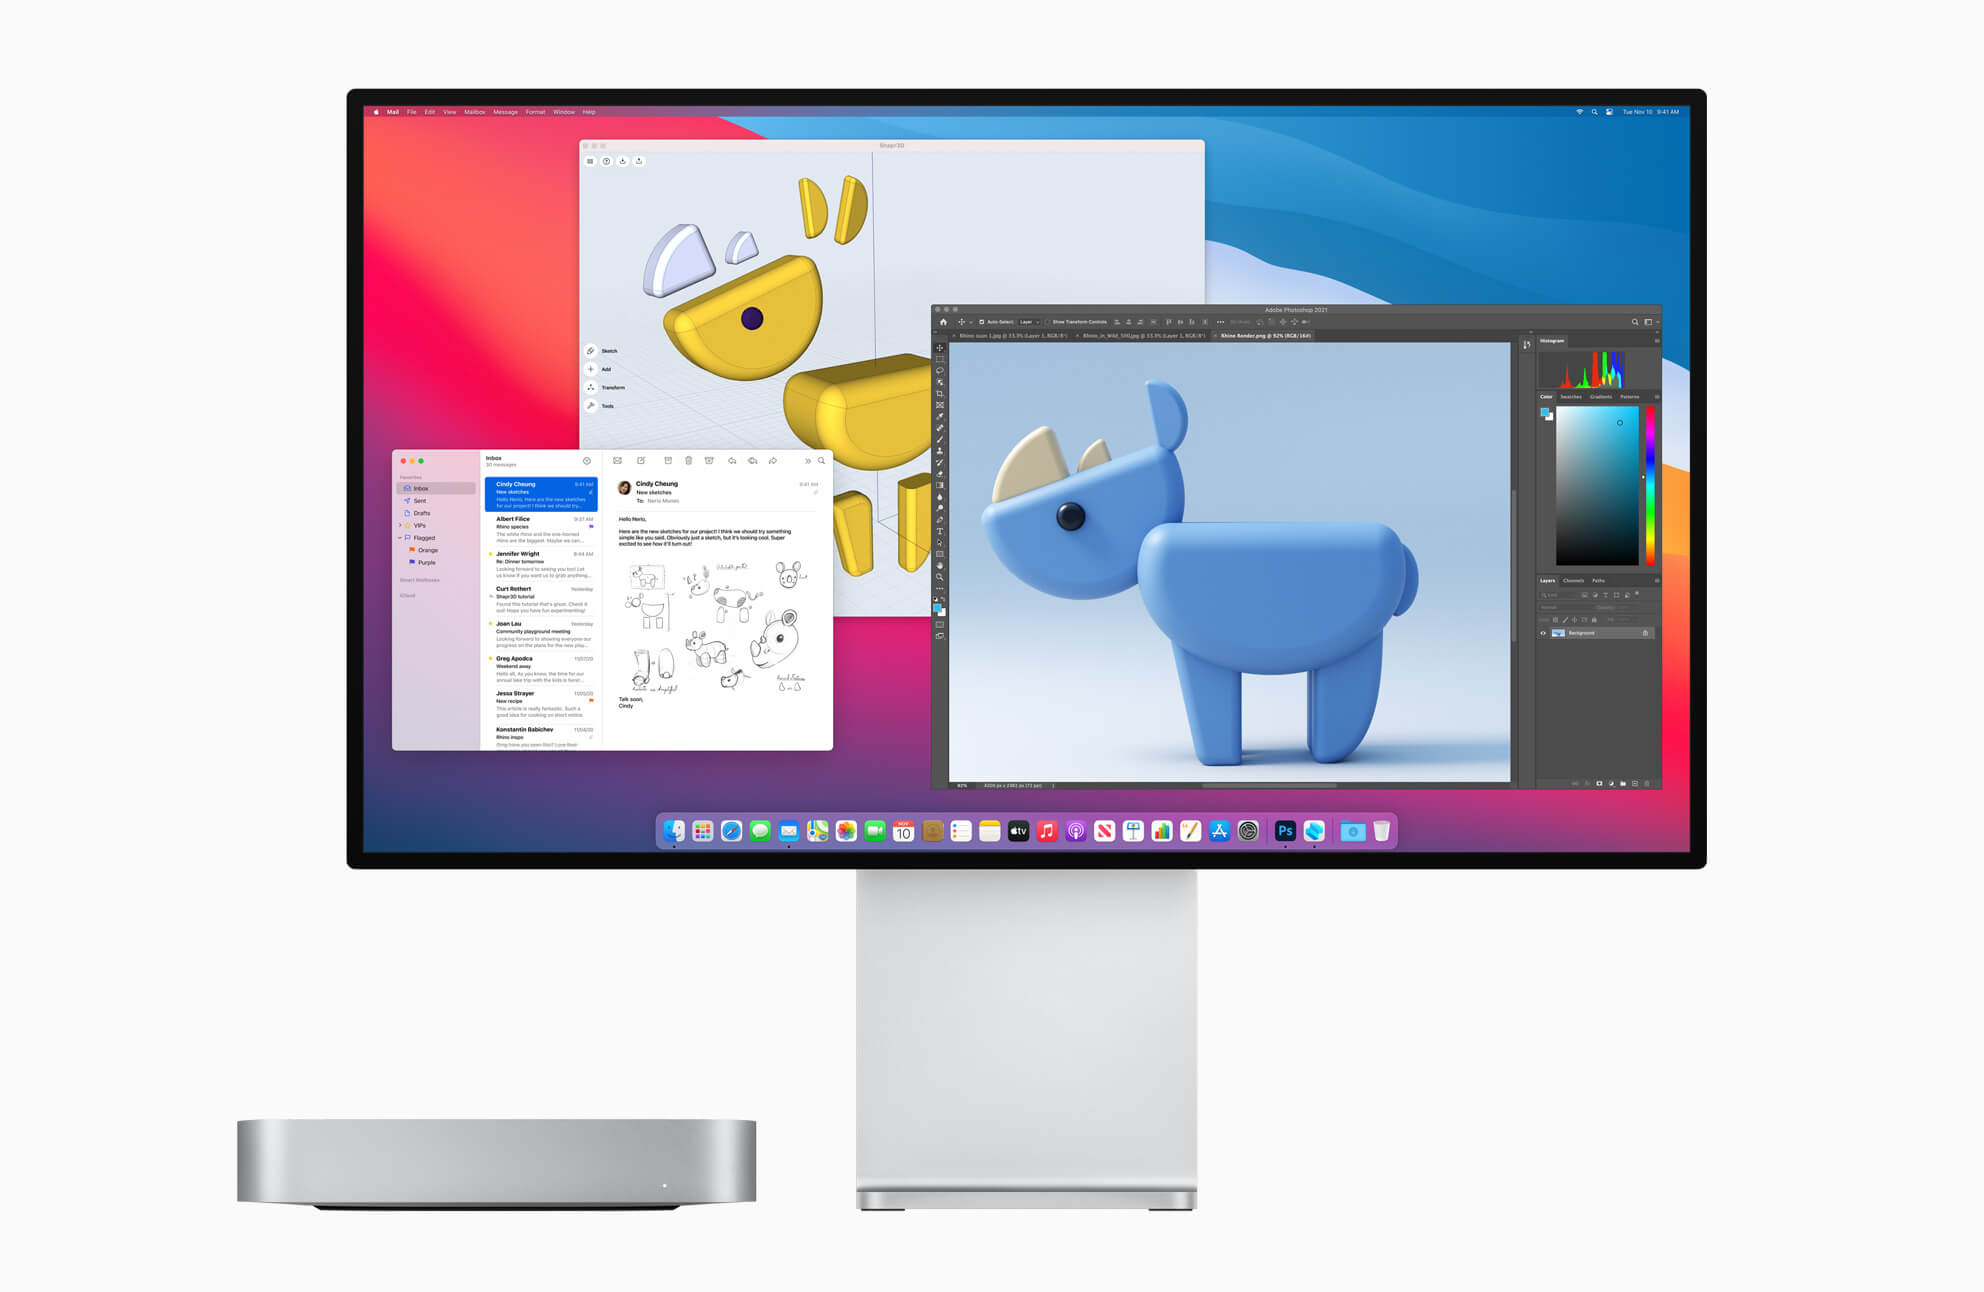 Je zou de Mac mini kunnen combineren met Apple’s Pro Display XDR voor ultiem beeld